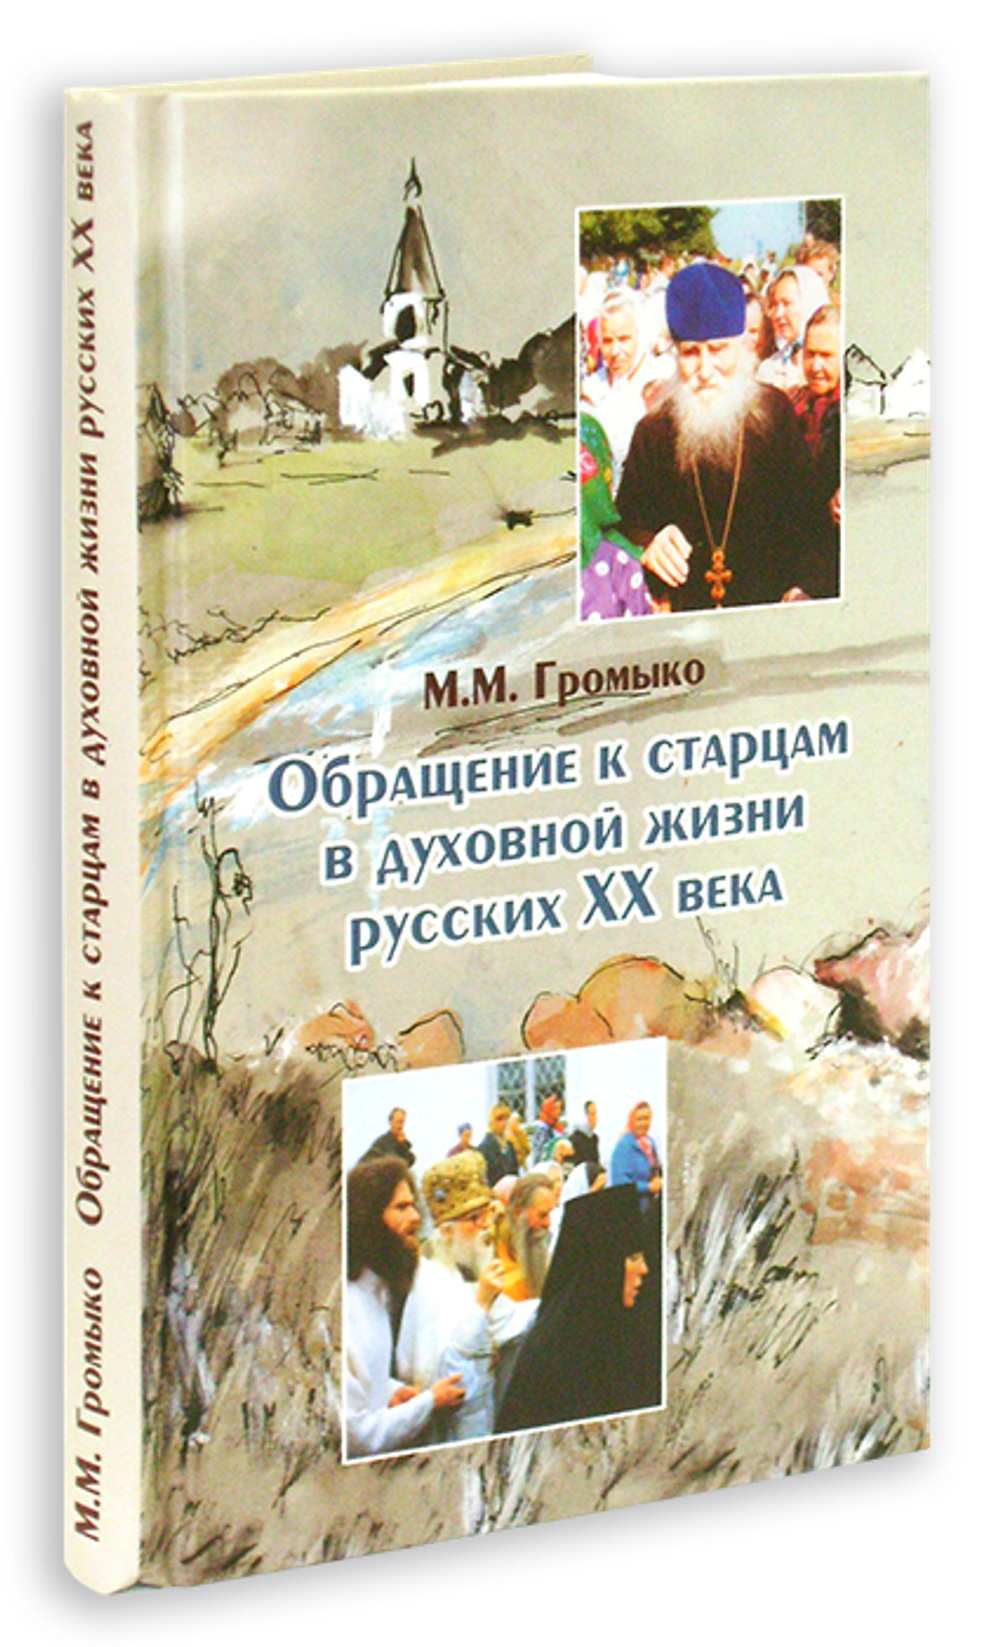 Обращение к старцам в духовной жизни русских XX века